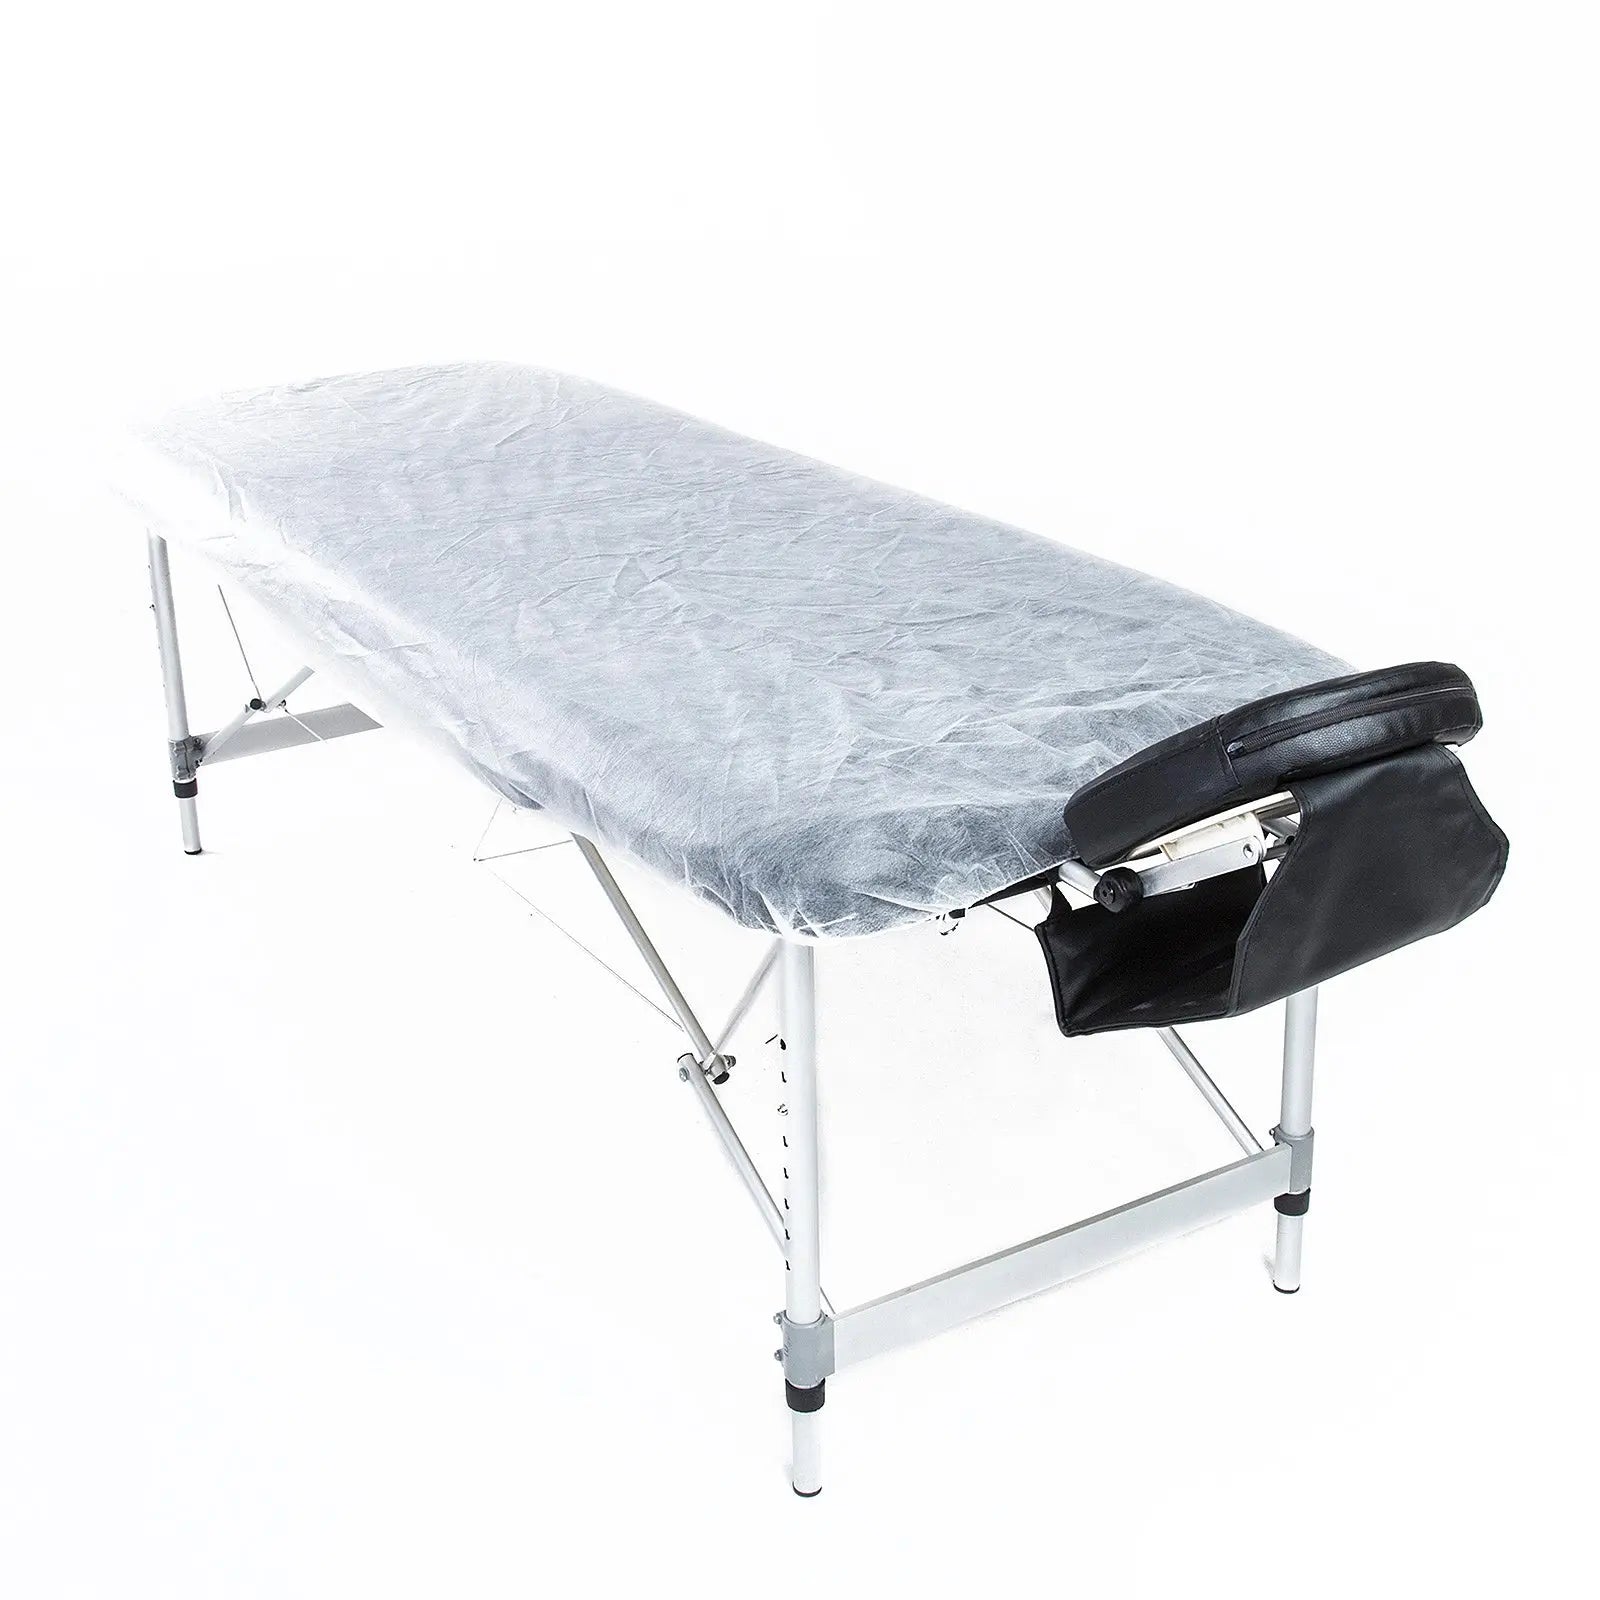 Forever Beauty 15pcs Disposable Massage Table Sheet Cover 180cm x 75cm Deals499